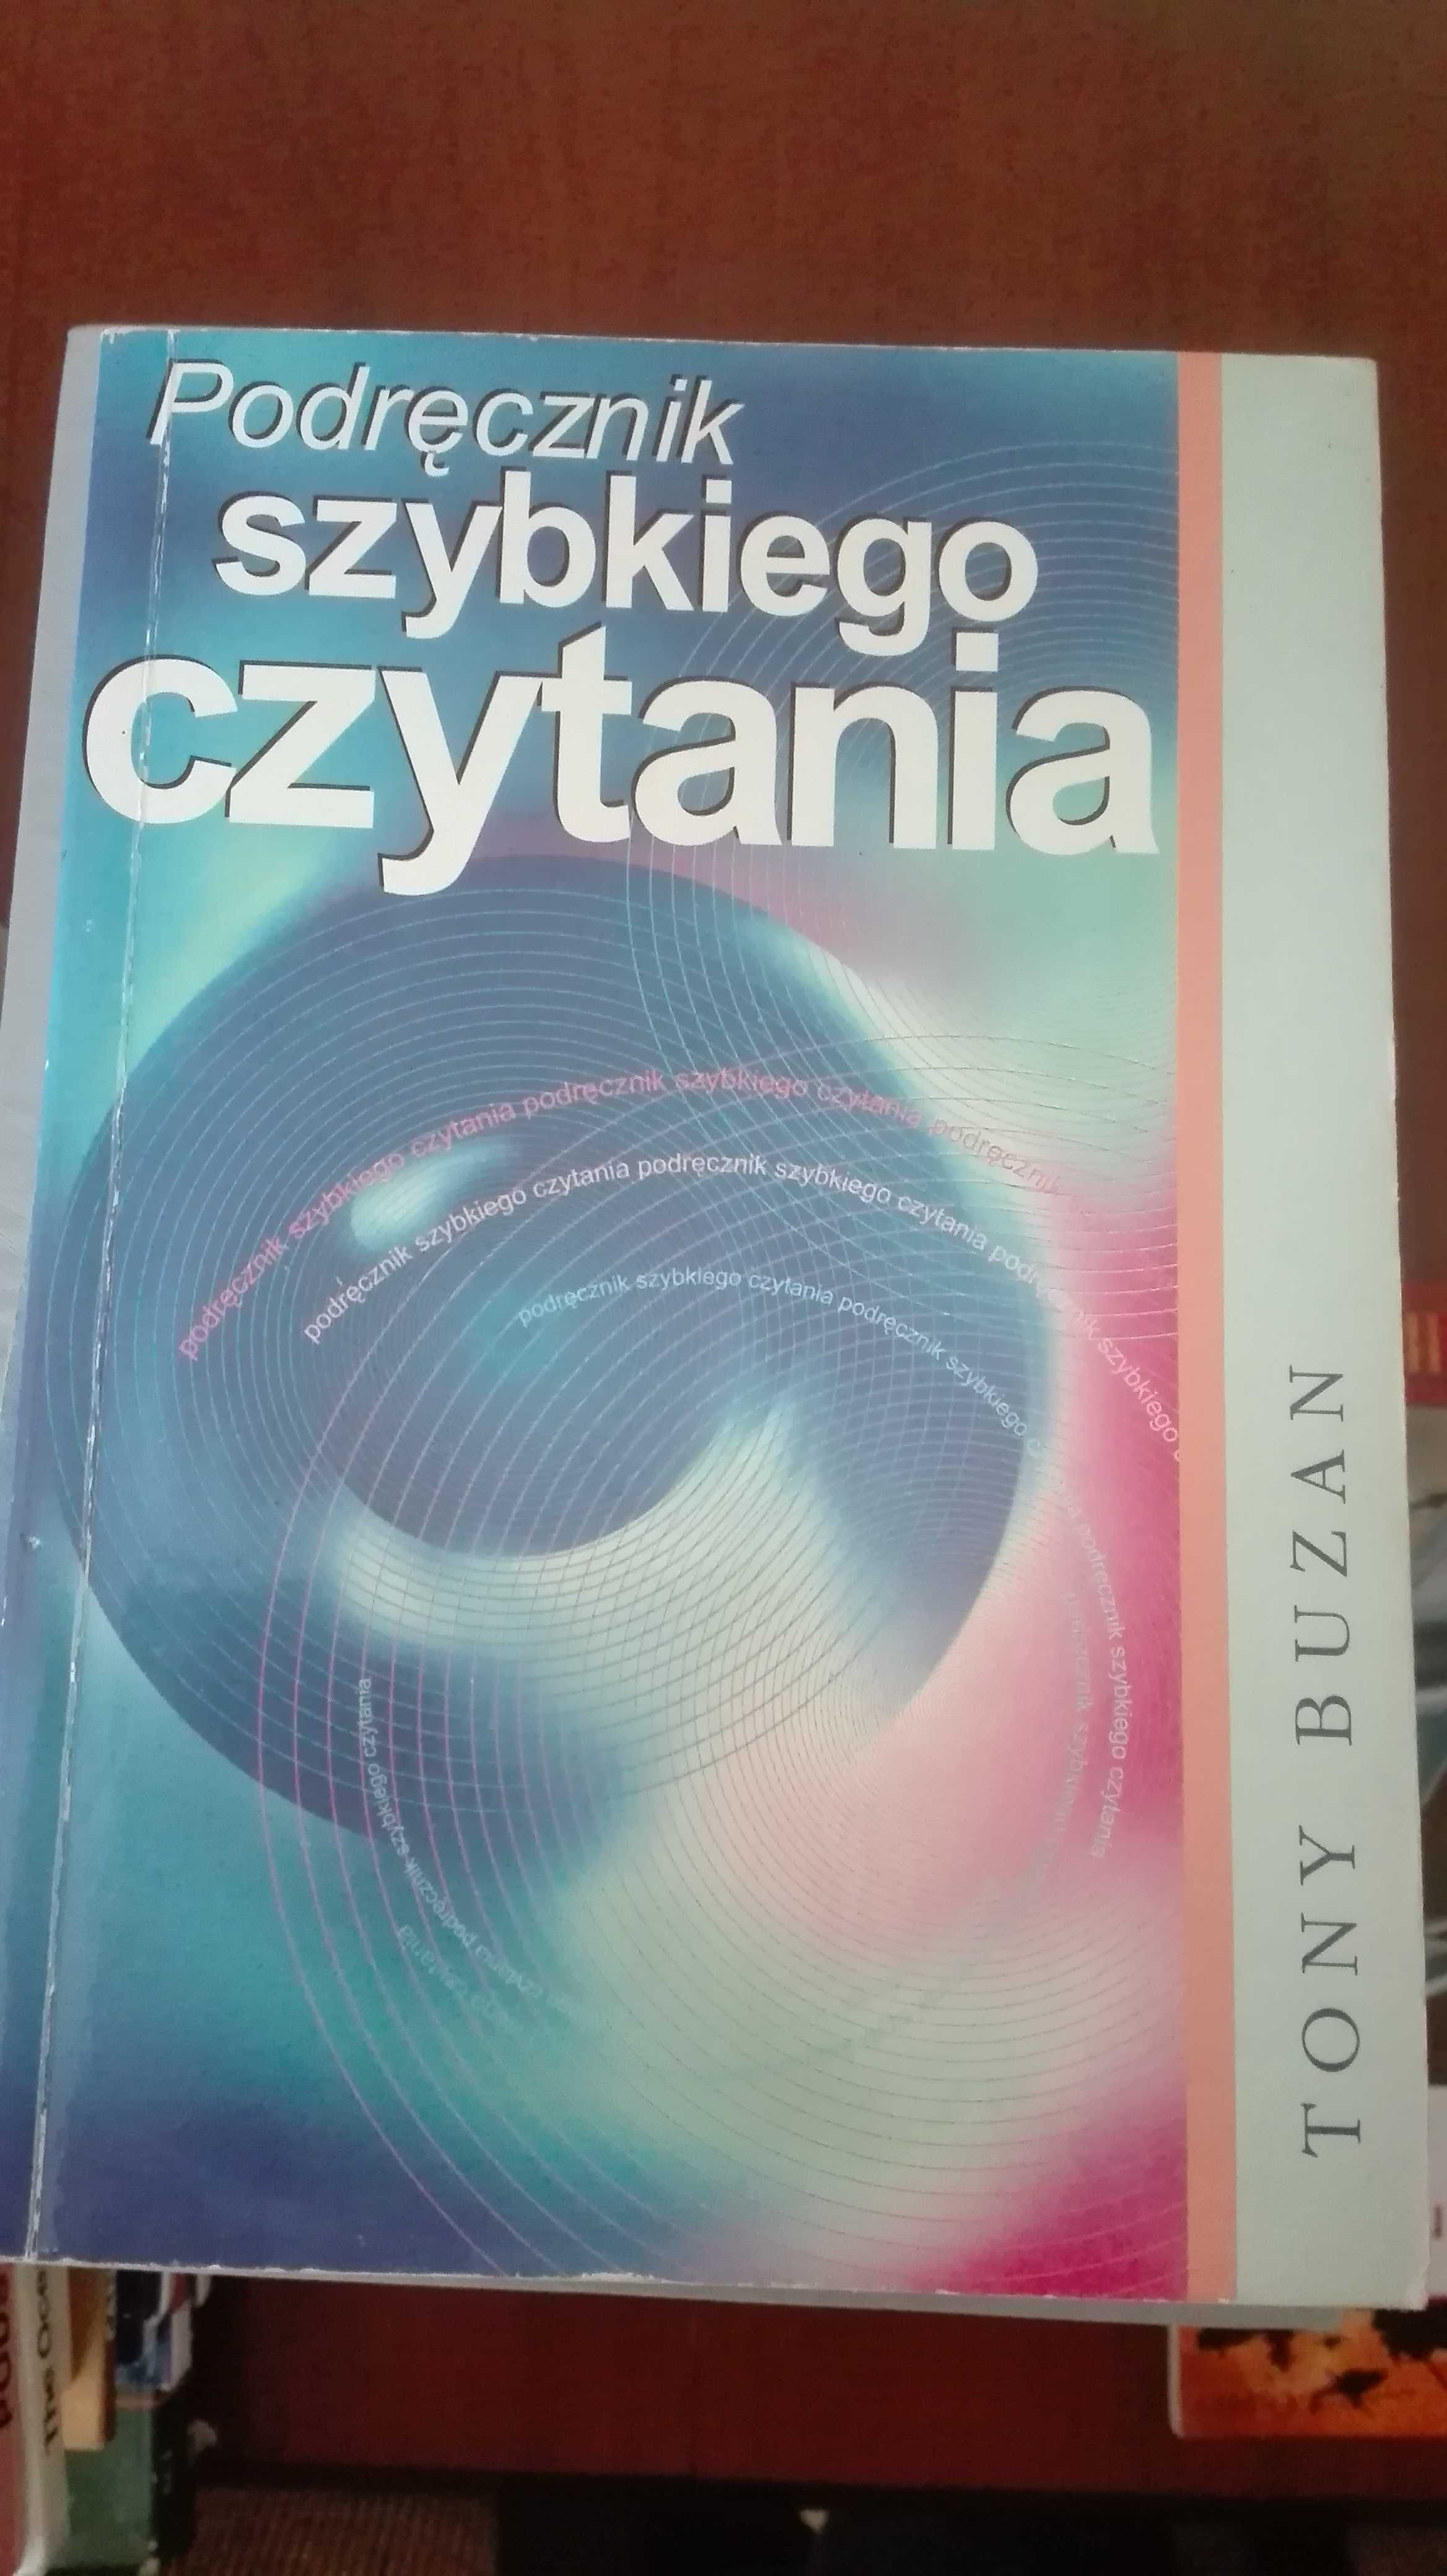 Podręcznik szybkiego czytania
Tony Buzan